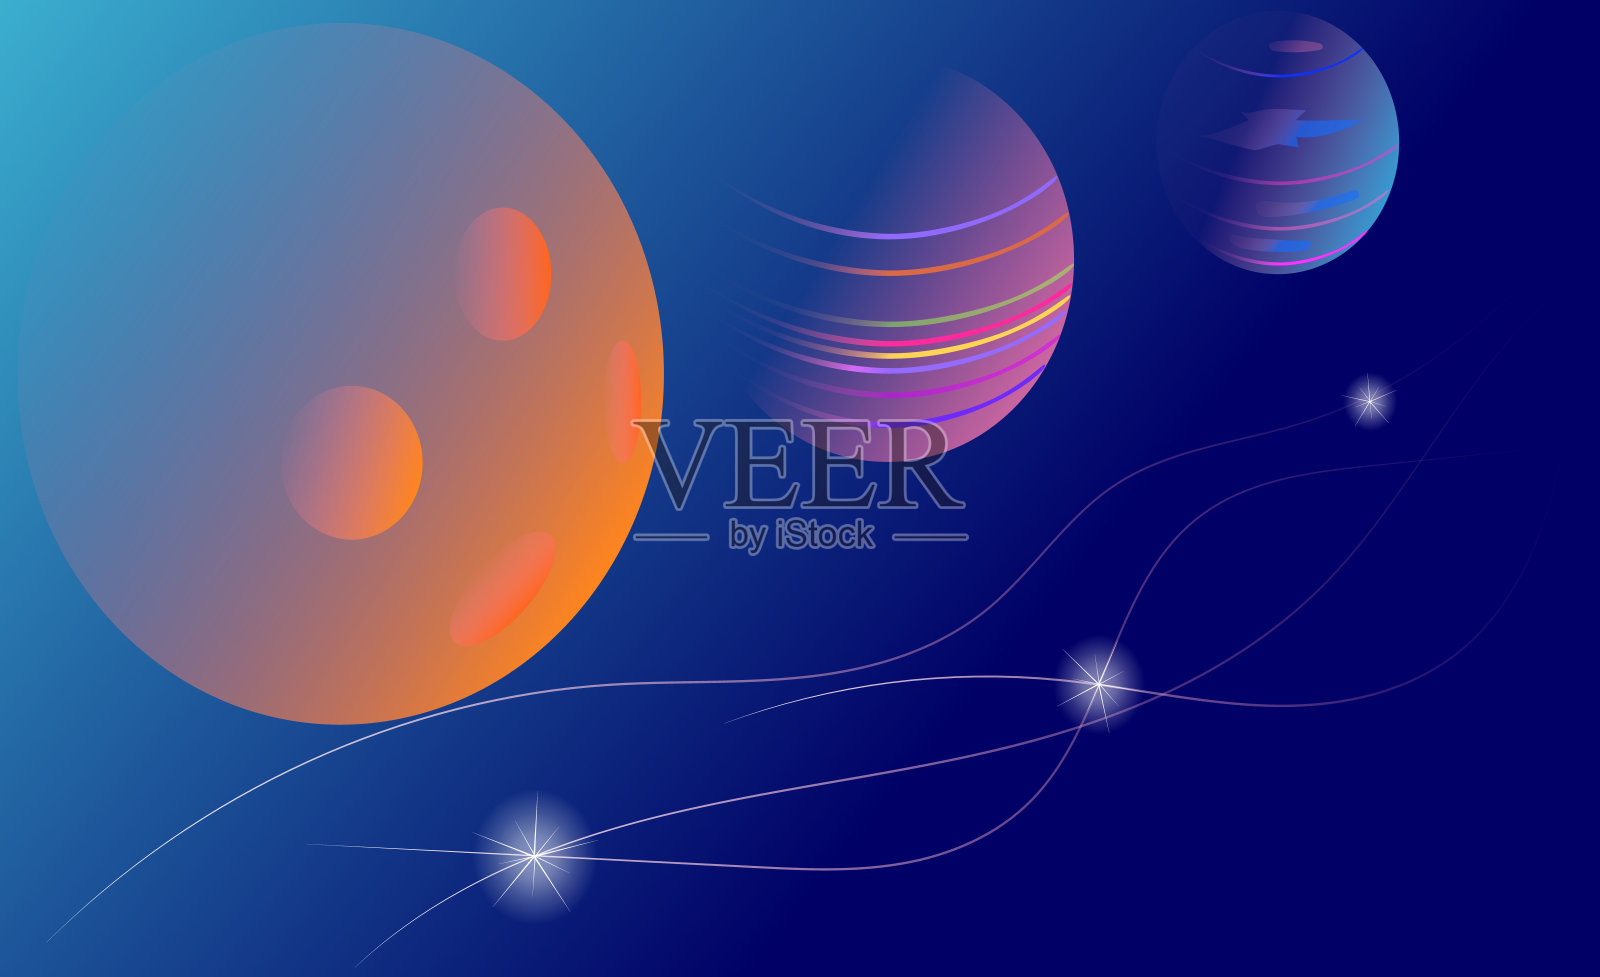 空间和行星背景。在黑暗的空间中有三颗彩色的行星，它们有恒星和发光的线条。矢量插图。有行星的宇宙天空插画图片素材